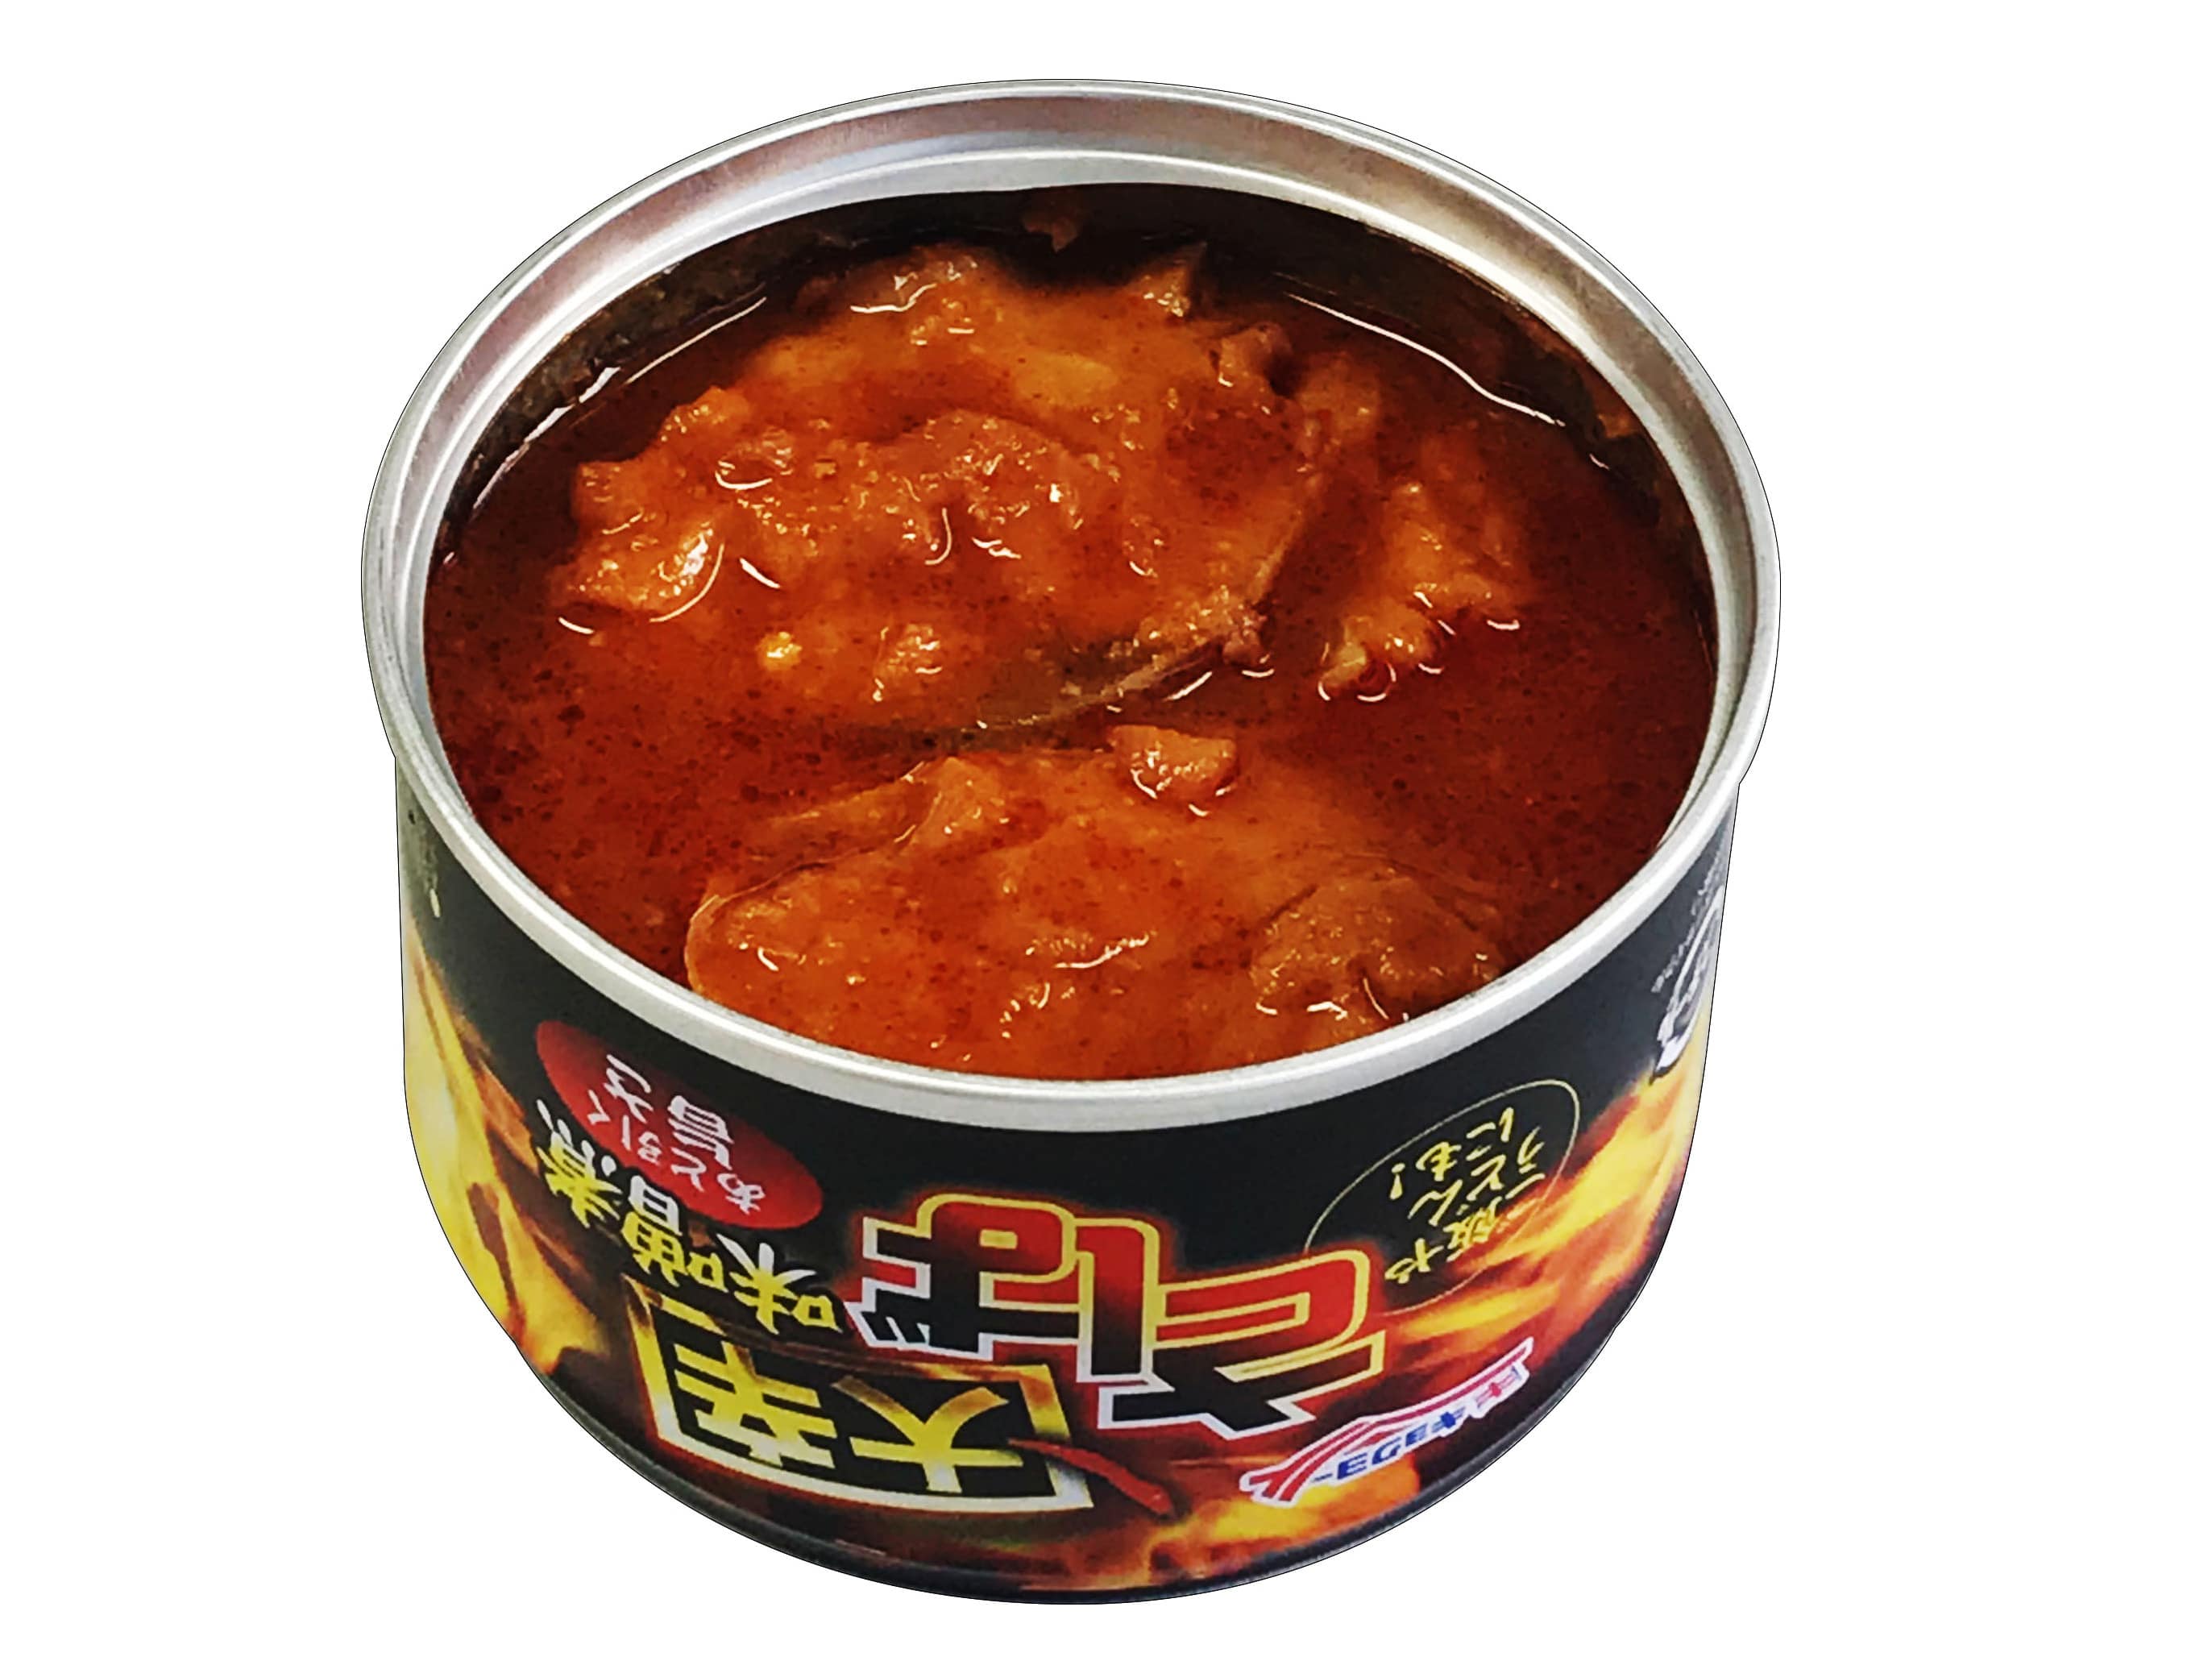 さば味噌煮(大辛)【6缶セット】